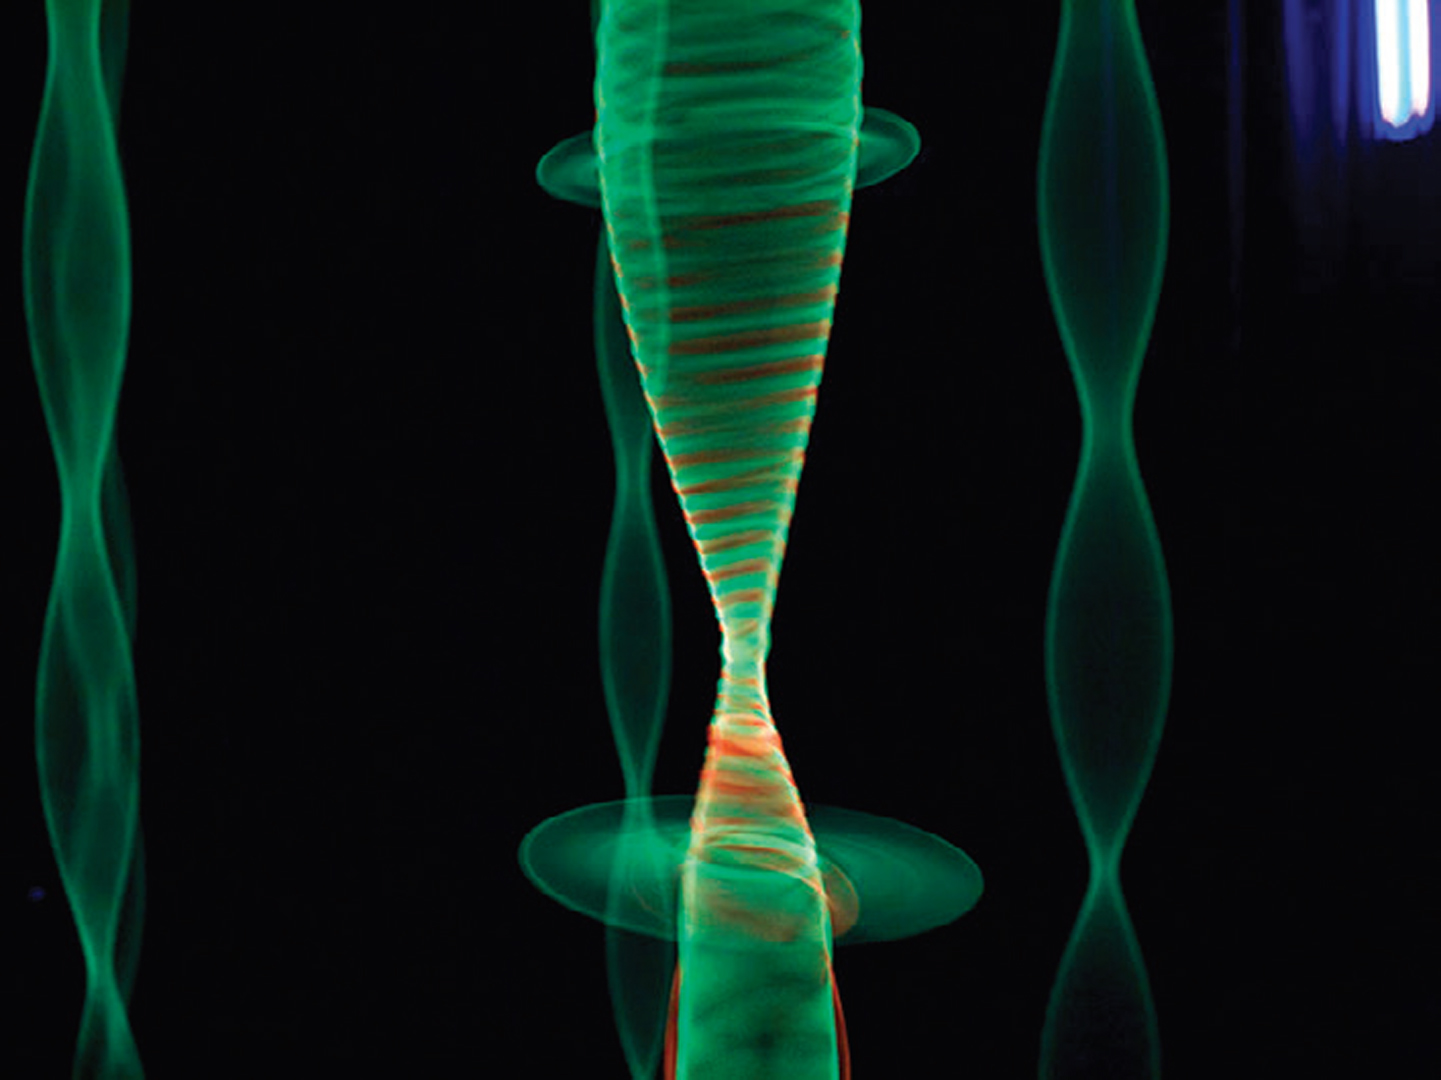 ©2012 – ongoing, Patrick Henri Harrop, Vortical Filament